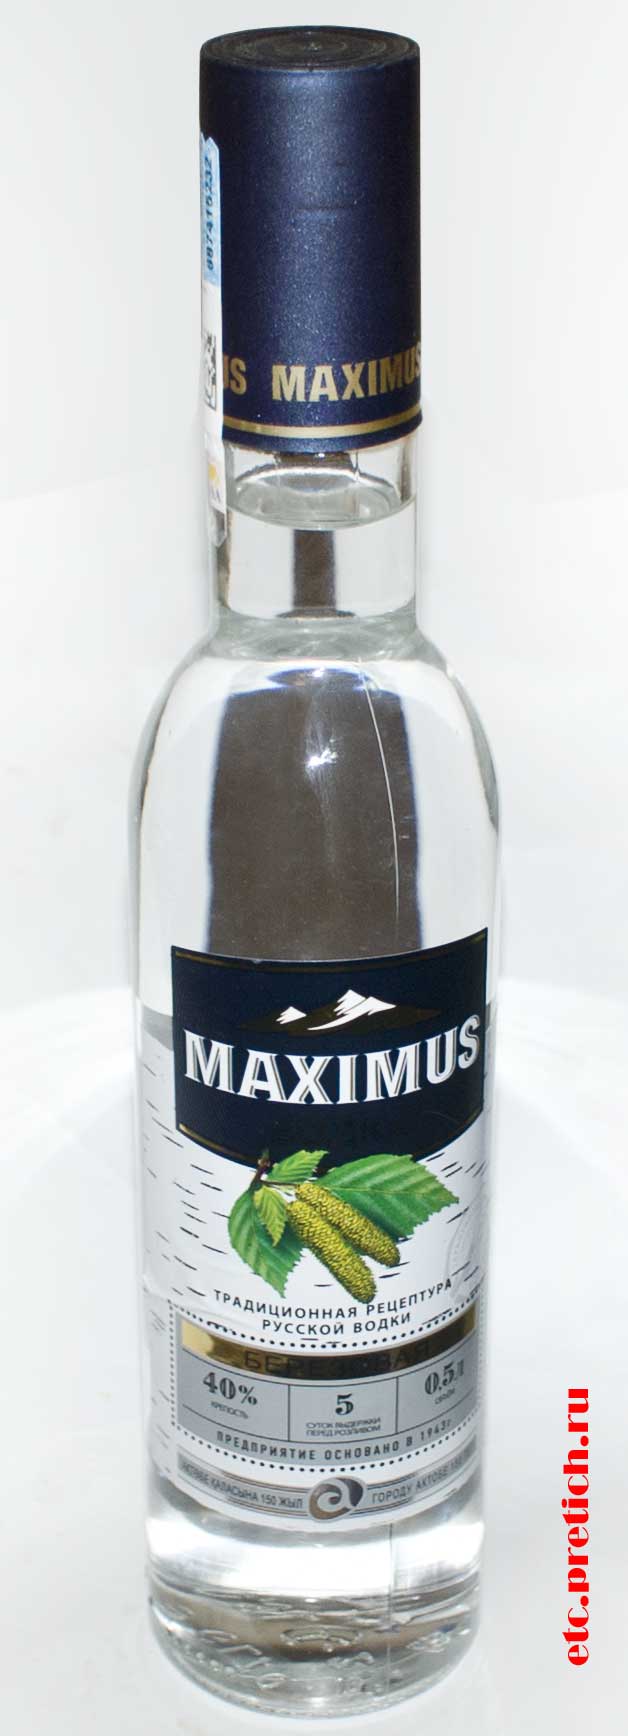 Отзыв на Maximus водка березовая из Актобе Казахстан, самая дешевая